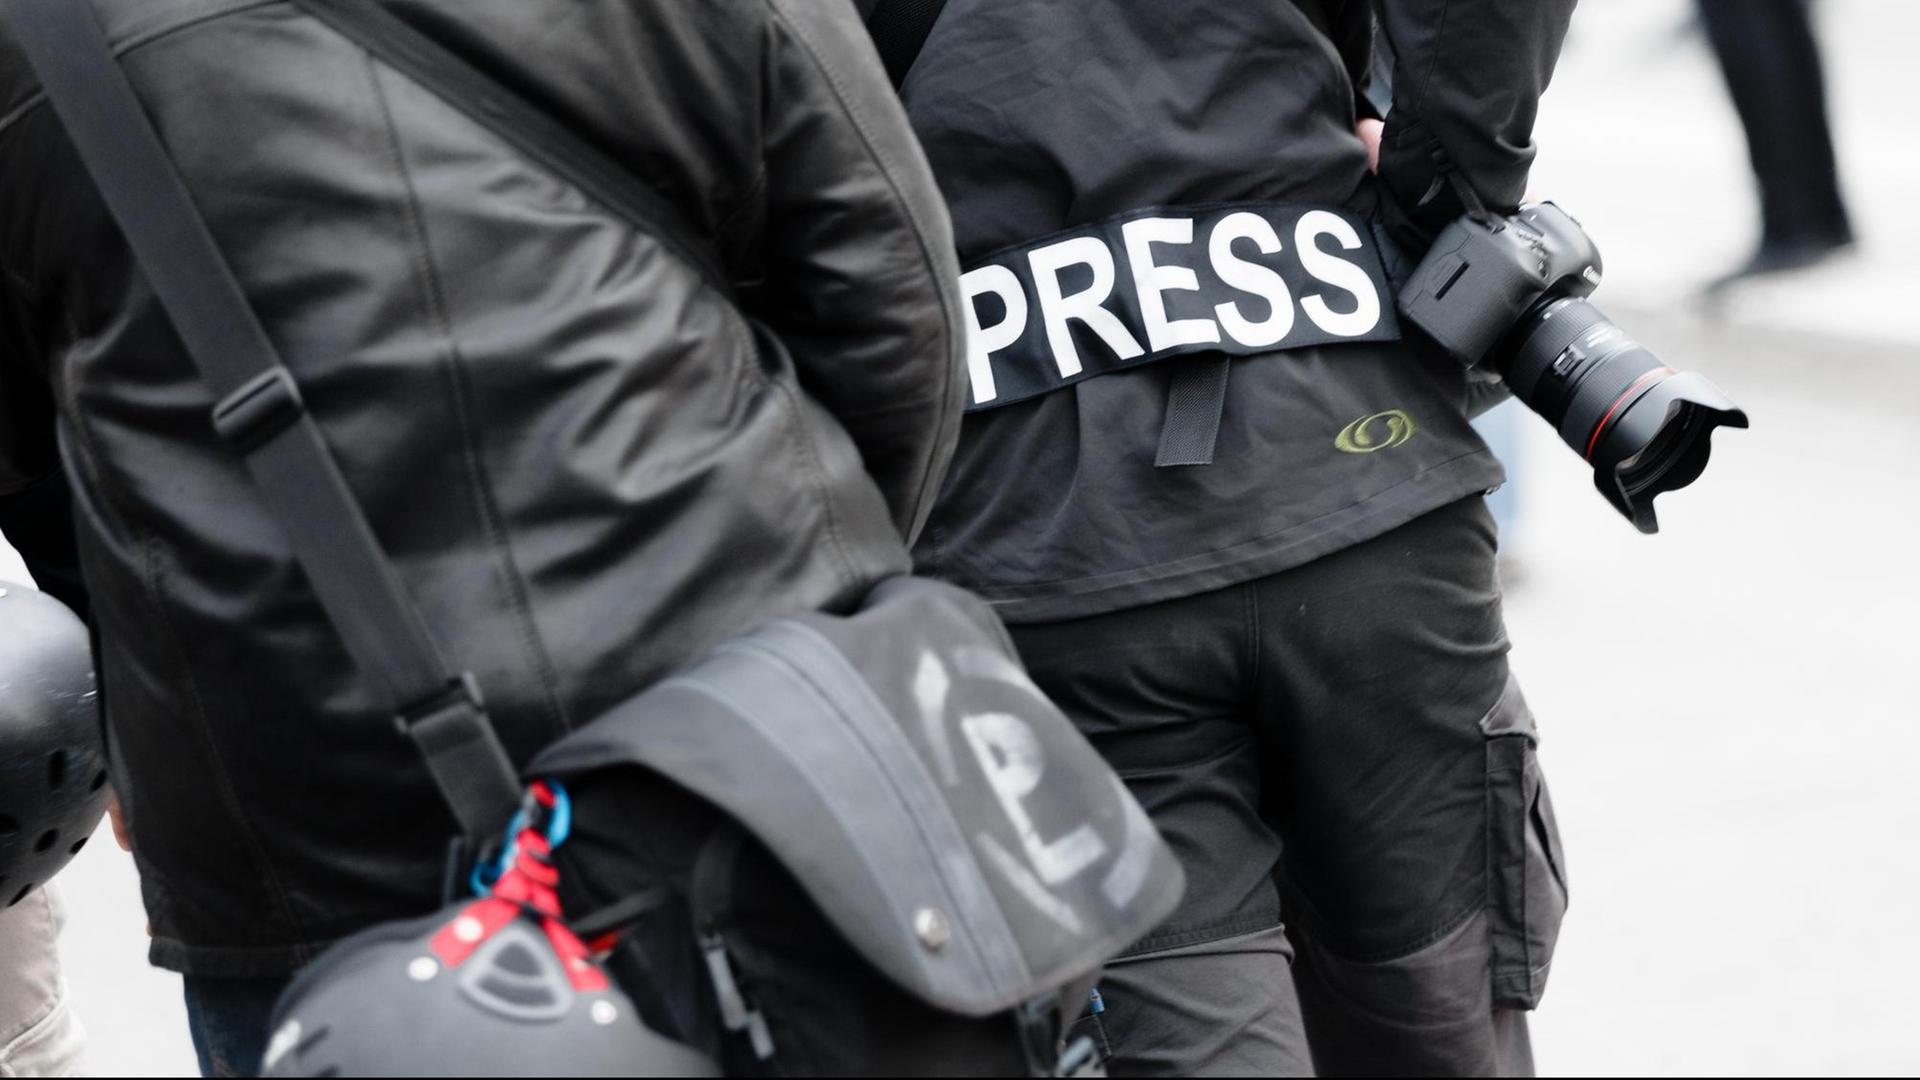 Ein Fotoreporter trägt am 01.05.2017 in Hamburg auf einer Demonstration einen Aufnäher mit dem Text «PRESS» auf seiner Jacke, um sich gegenüber Polizei und Demonstranten als Journalist zu kennzeichnen.